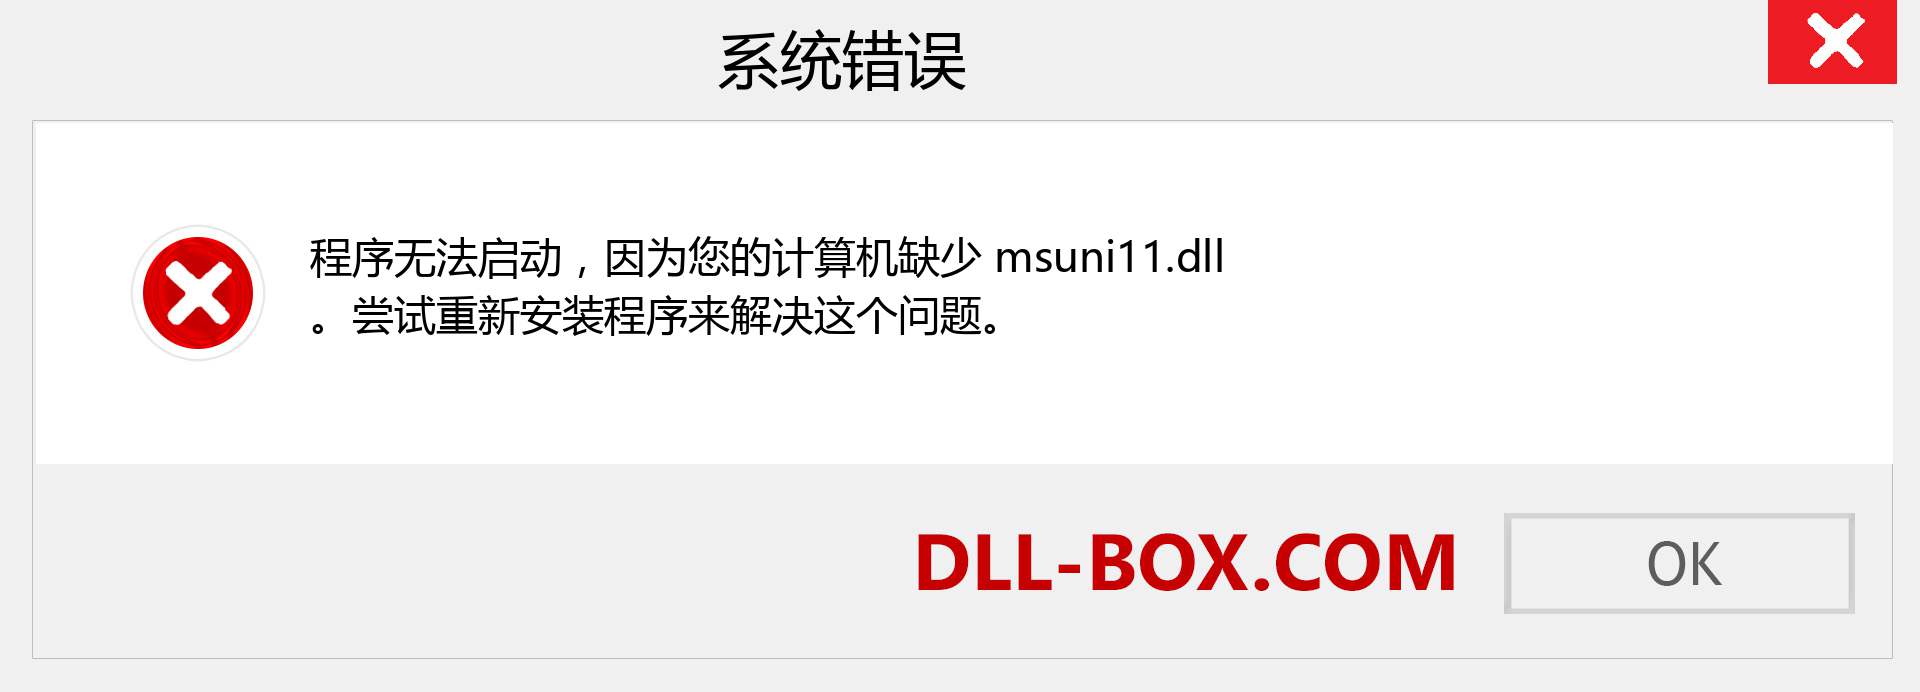 msuni11.dll 文件丢失？。 适用于 Windows 7、8、10 的下载 - 修复 Windows、照片、图像上的 msuni11 dll 丢失错误